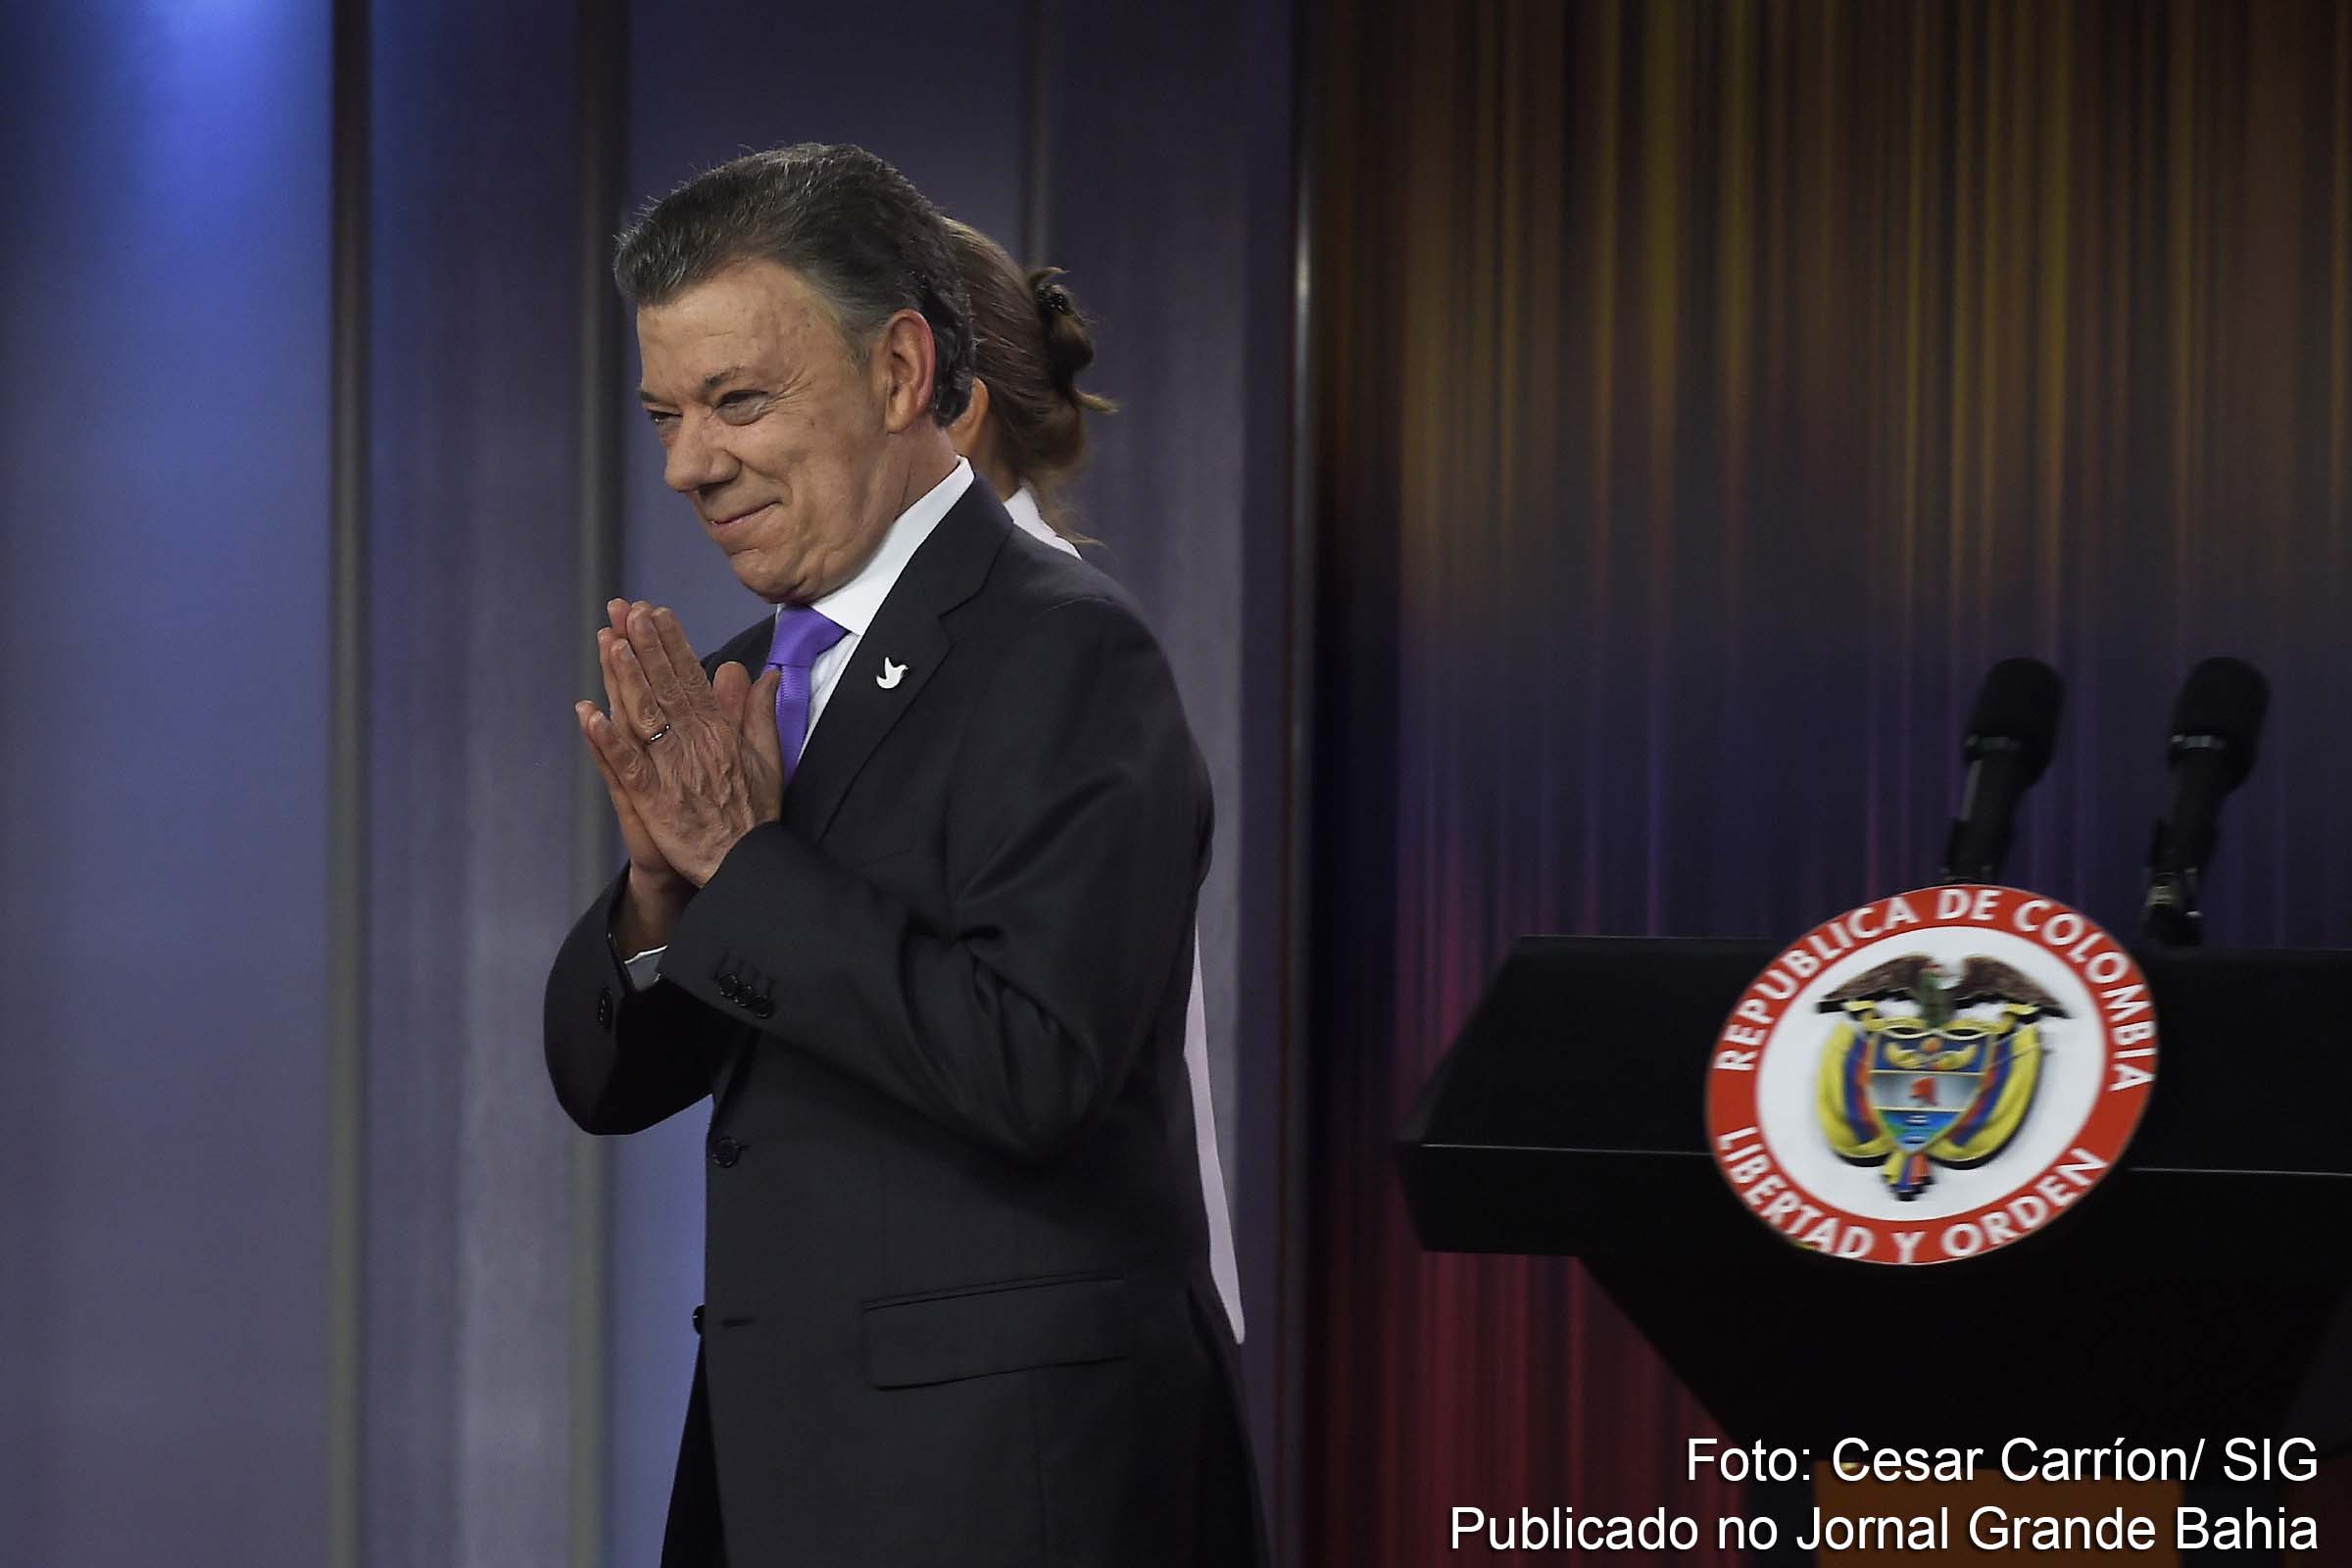 O presidente Juan Manuel Santos pediu que as autoridades averiguassem o caso "o mais rápido possível para que se torne pública toda a verdade no caso Odebrecht".